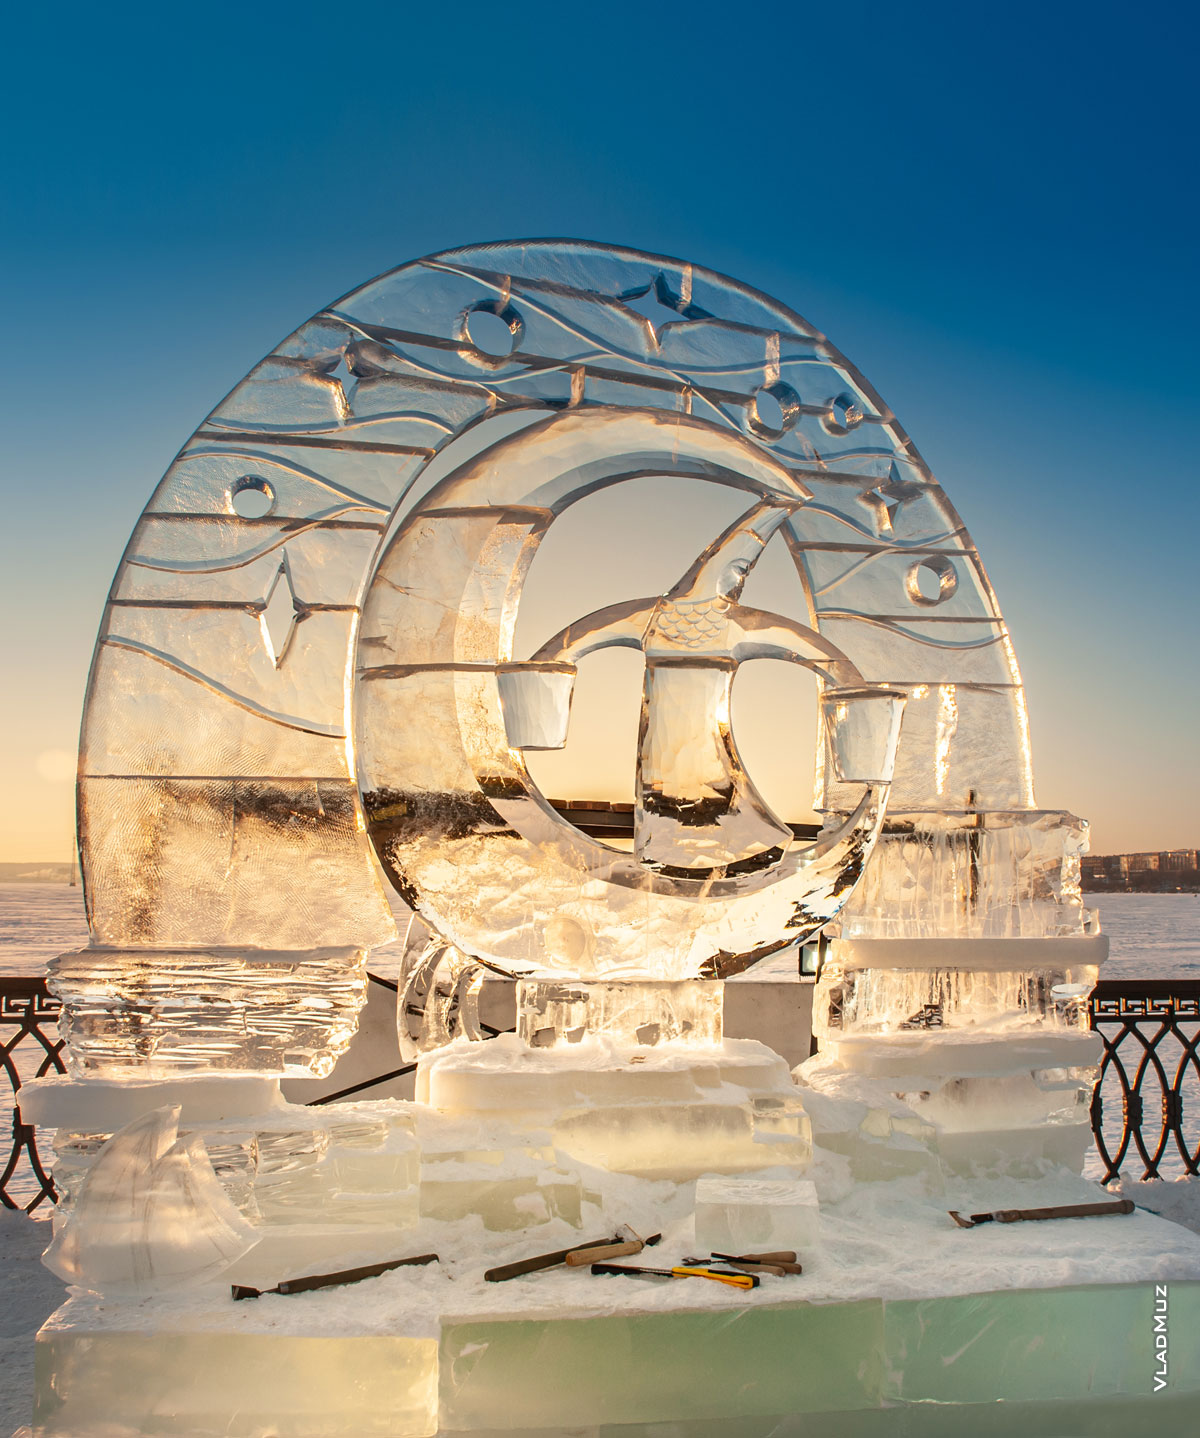 Ижевск, фестиваль «Удмуртский лед 2018»: фото ледовой скульптуры «Легенда о Луне»